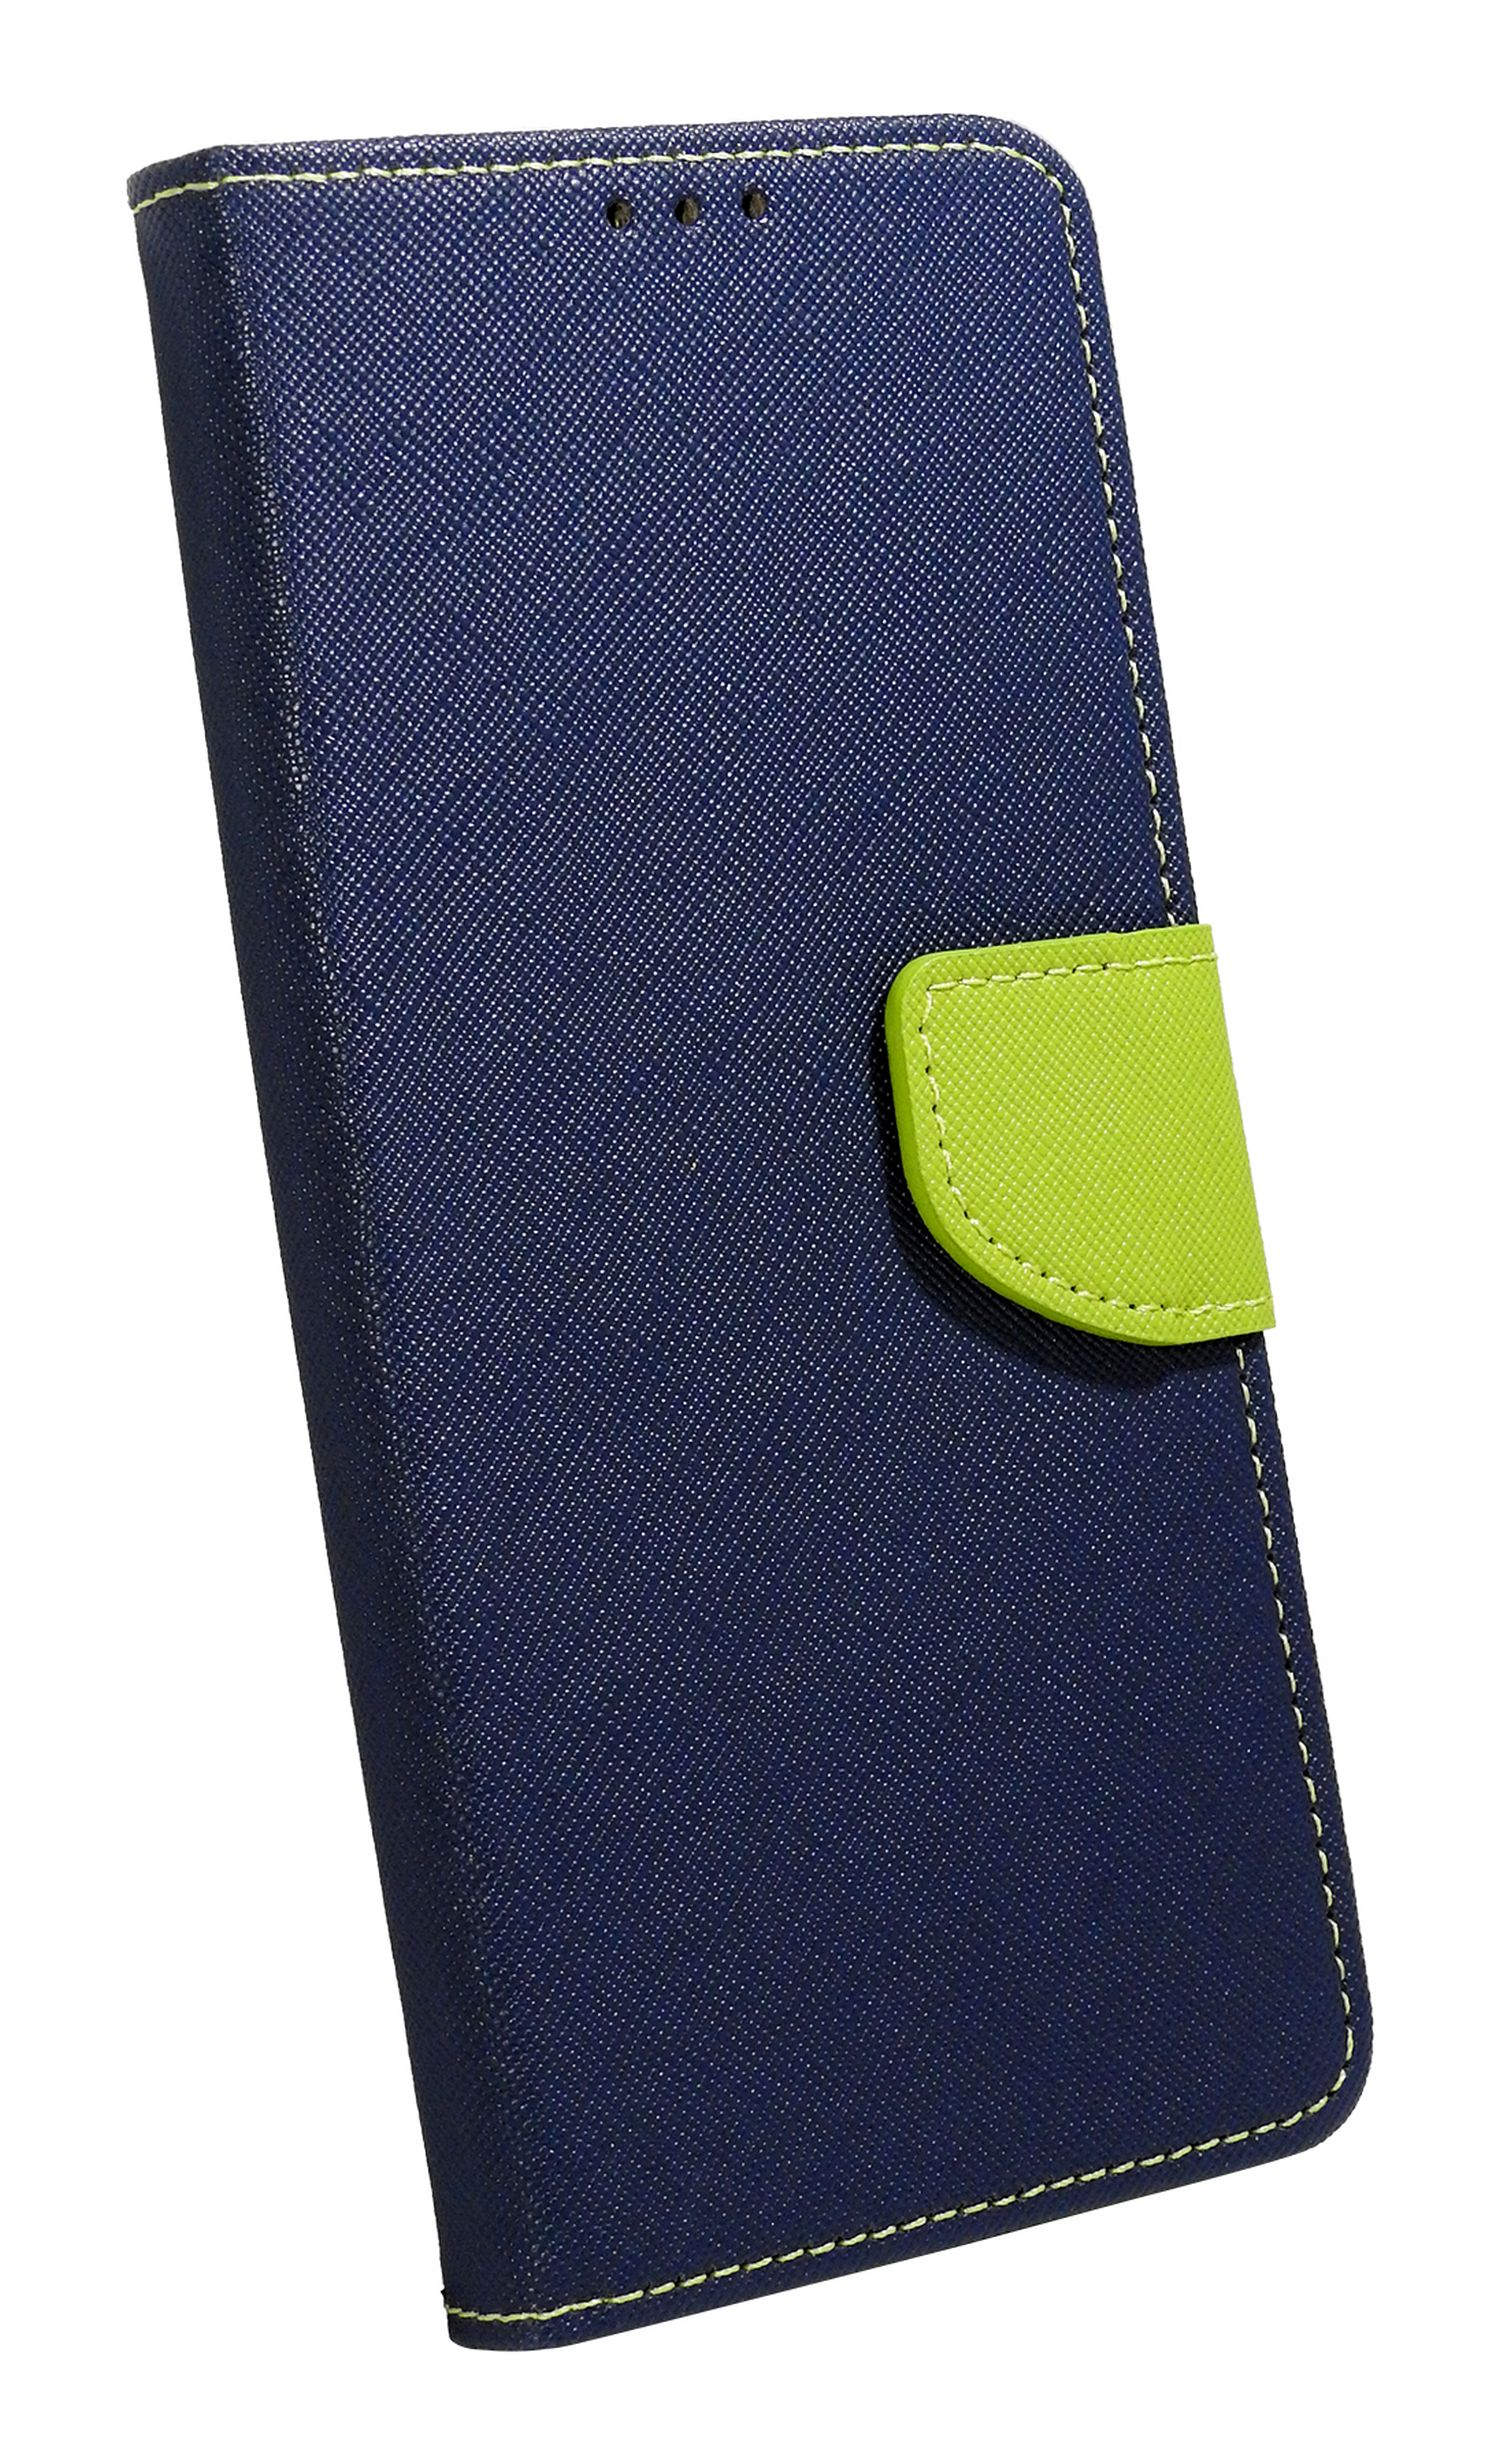 COFI (S911B), Bookcover, Tasch, Buch S23 Samsung, Galaxy Blau-Grün